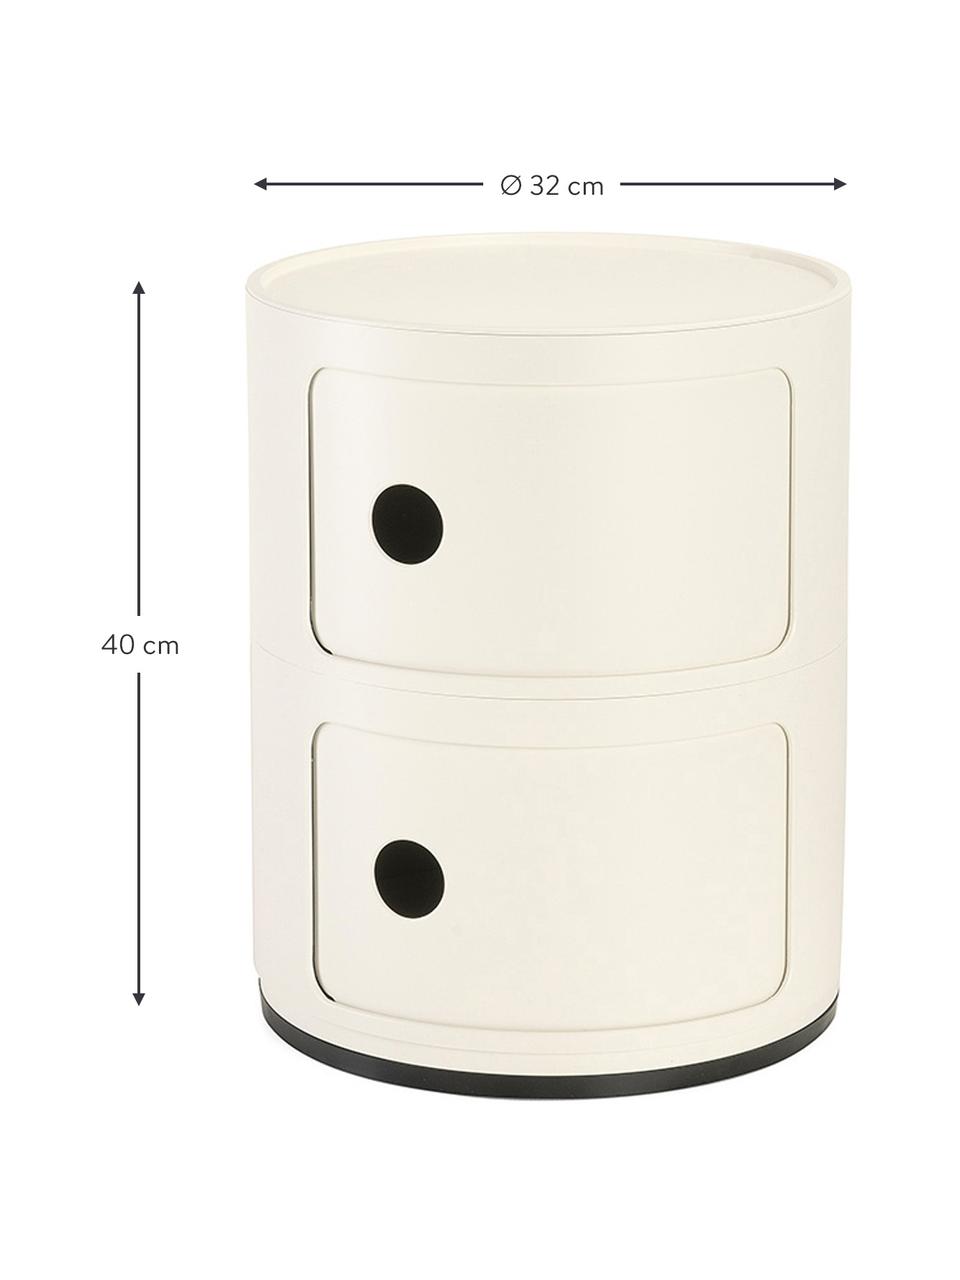 Contenitore di design con 2 cassetti Componibili, Plastica (ABS), laccata, certificata Greenguard, Bianco crema lucido, Ø 32 x Alt. 40 cm